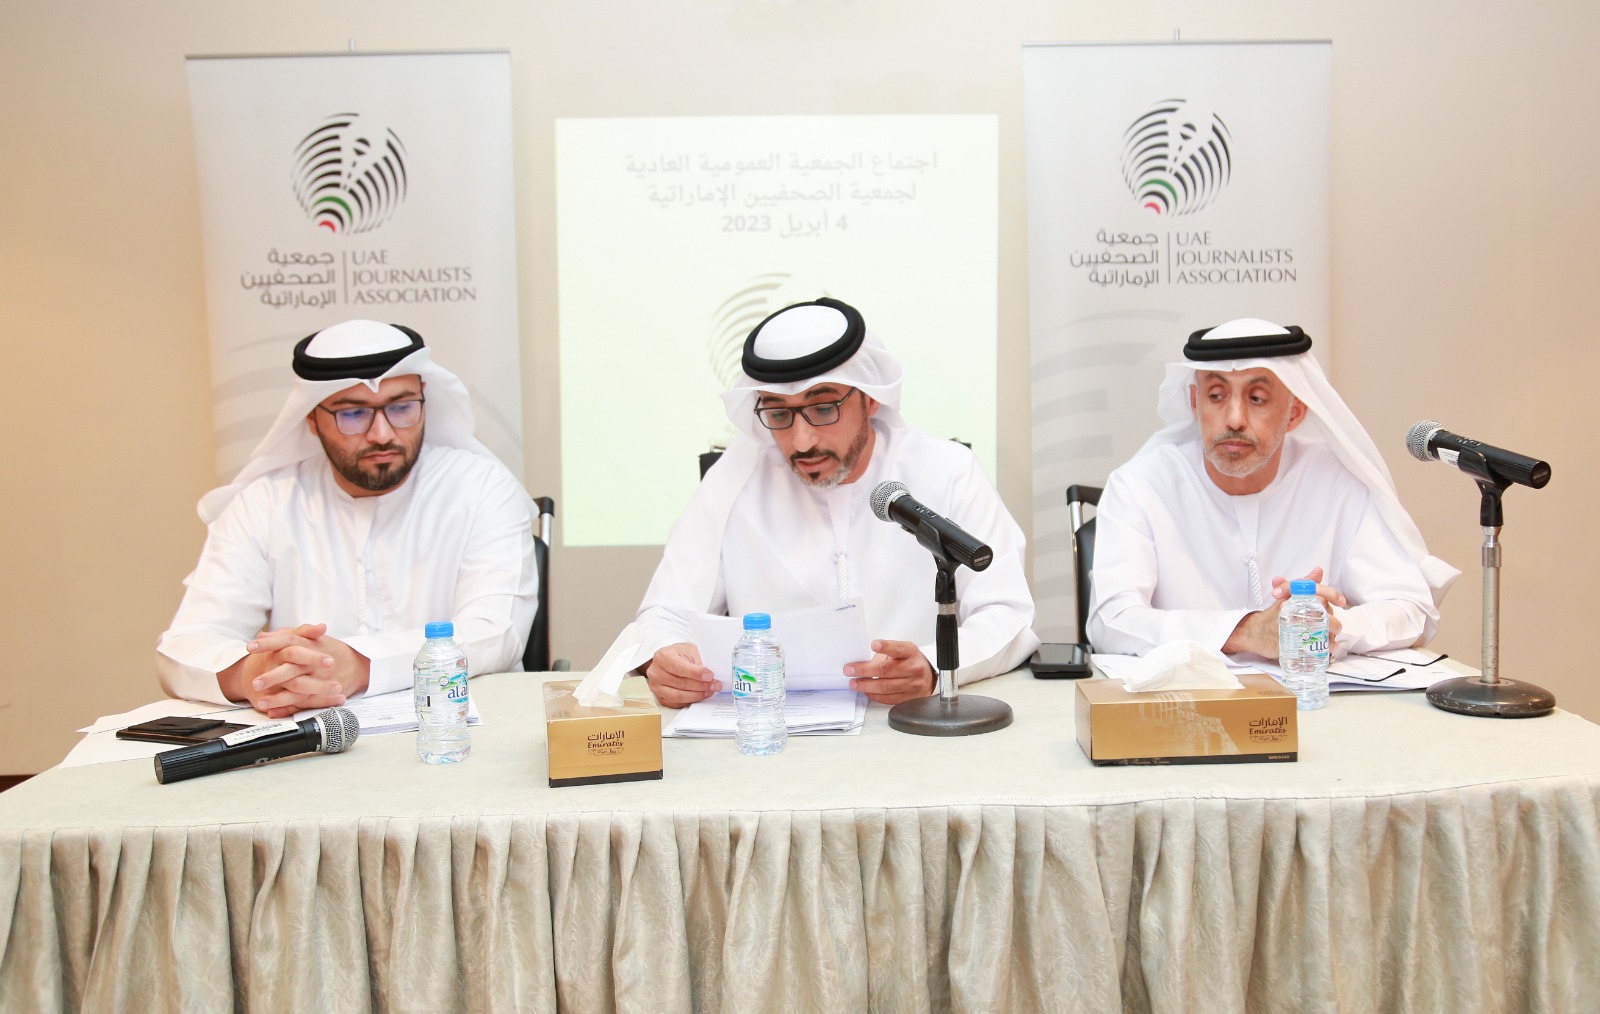 "الصحفيين الإماراتية" تعقد الجمعية العمومية العادية وتستعرض أنشطة عام 2022 وتدعو أعضاءها إلى مزيد من المشاركة والتفاعل